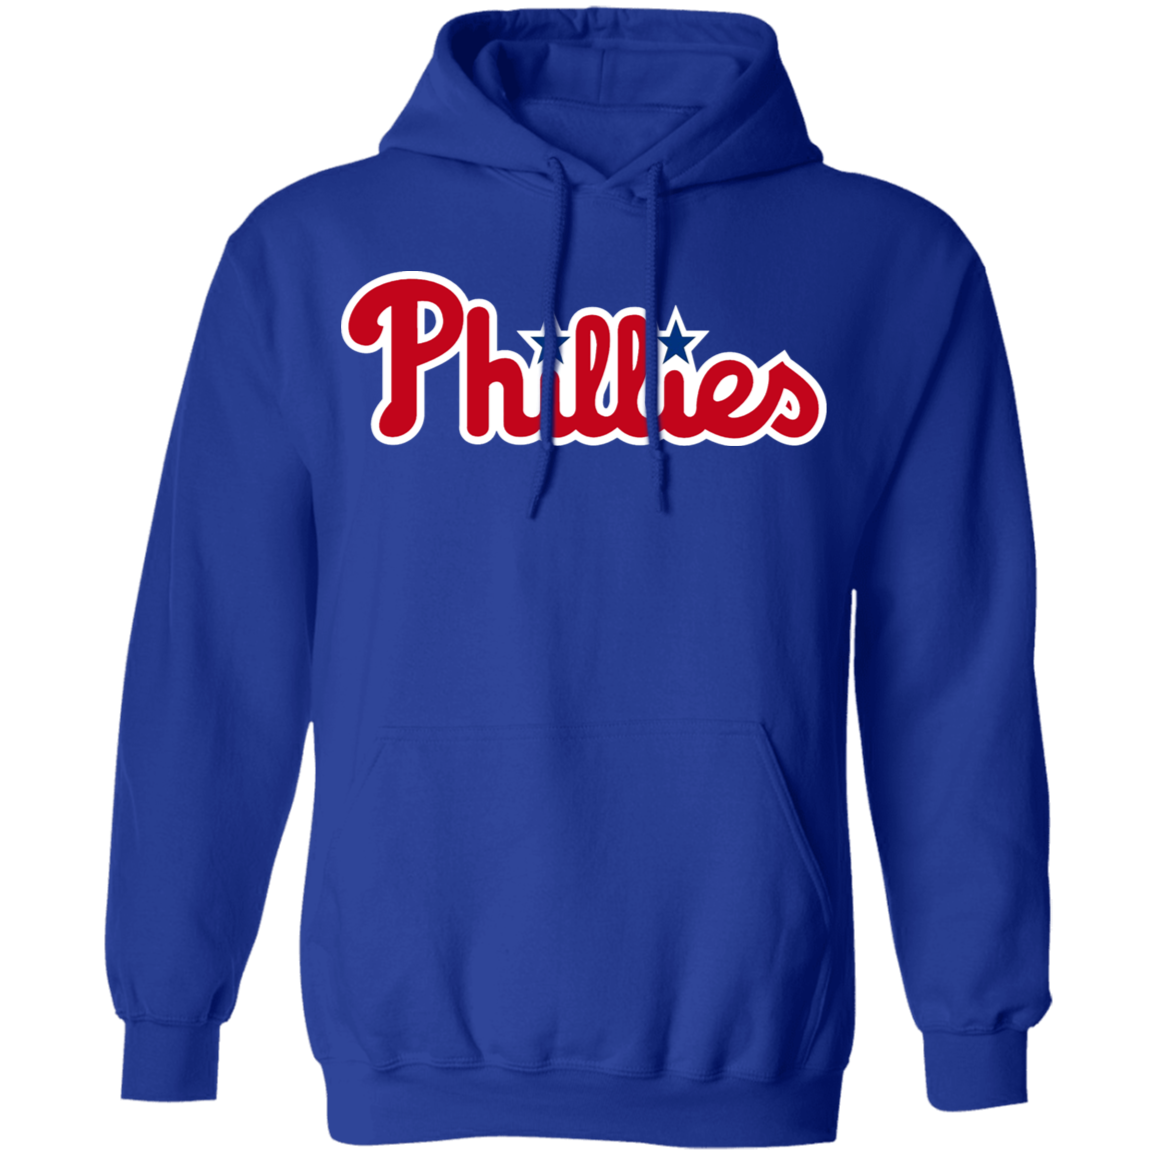 phillies hoodie blue